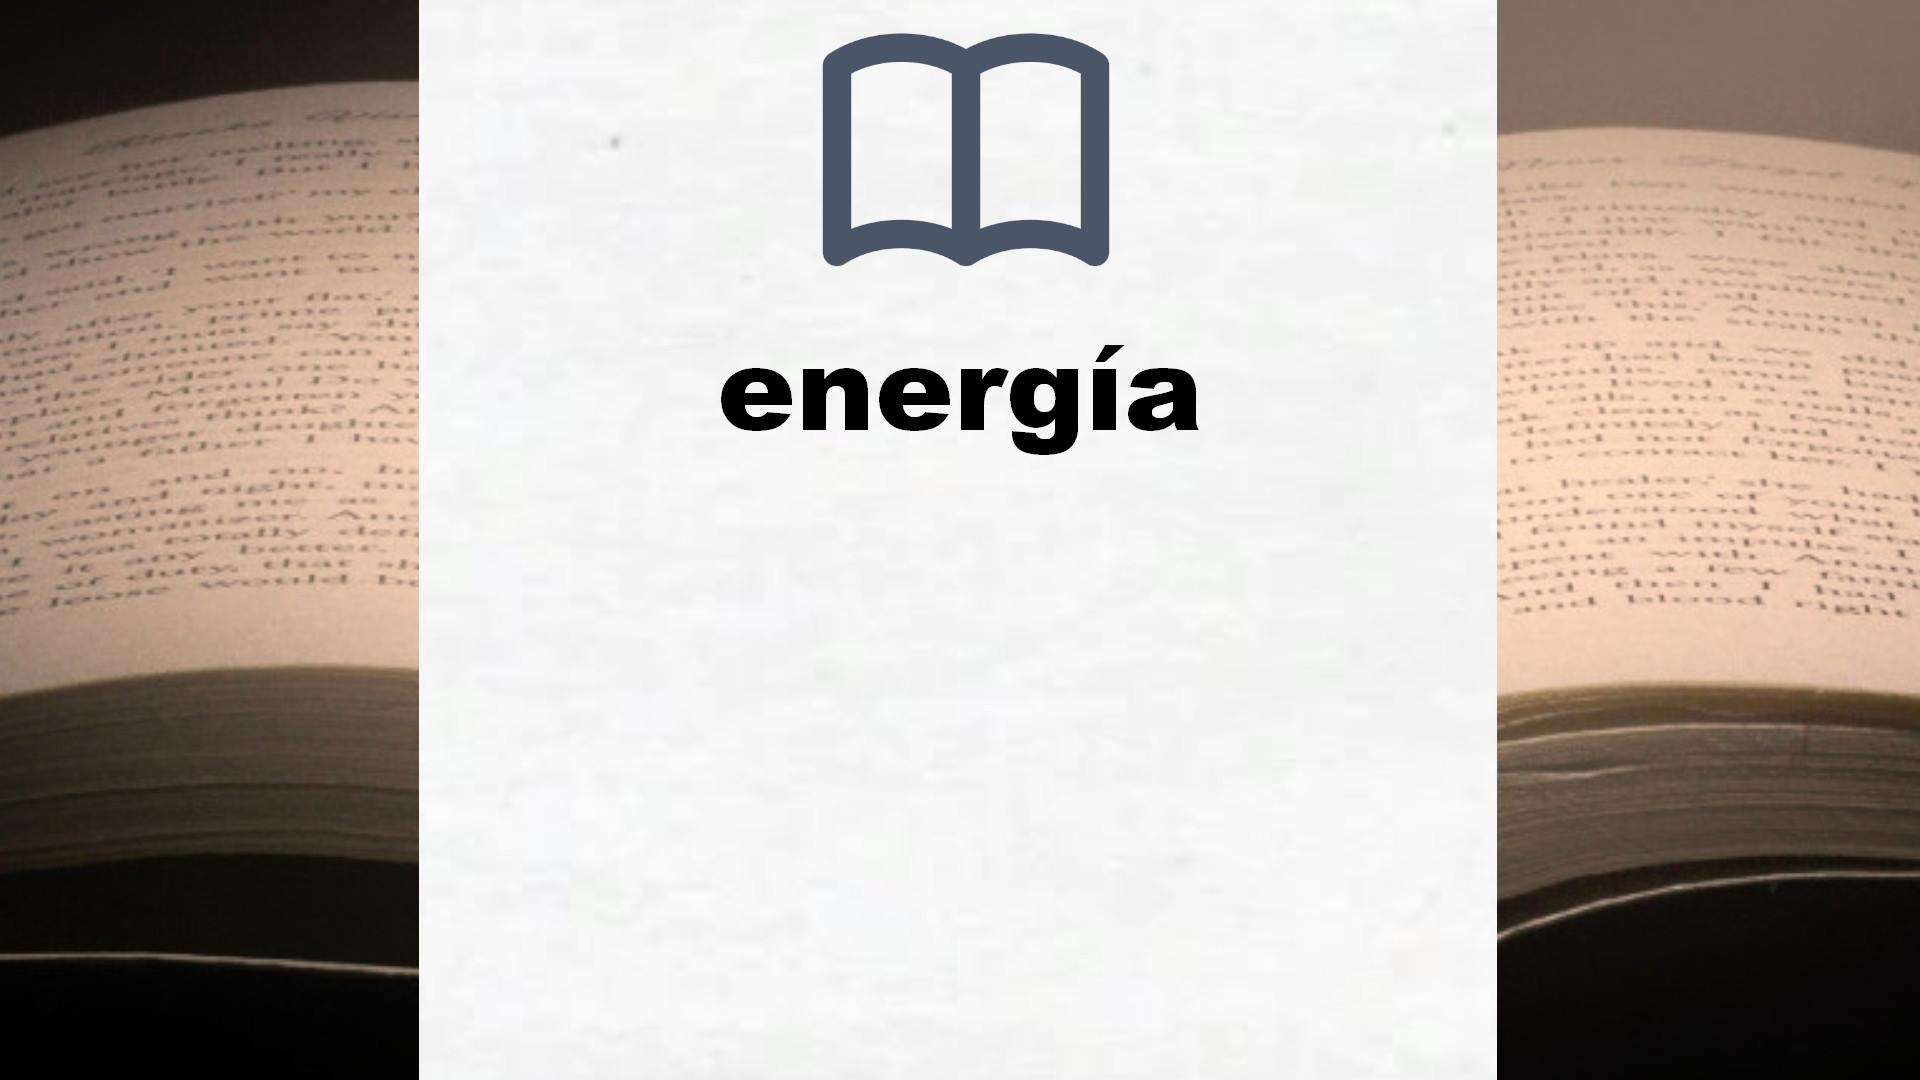 Libros sobre energía